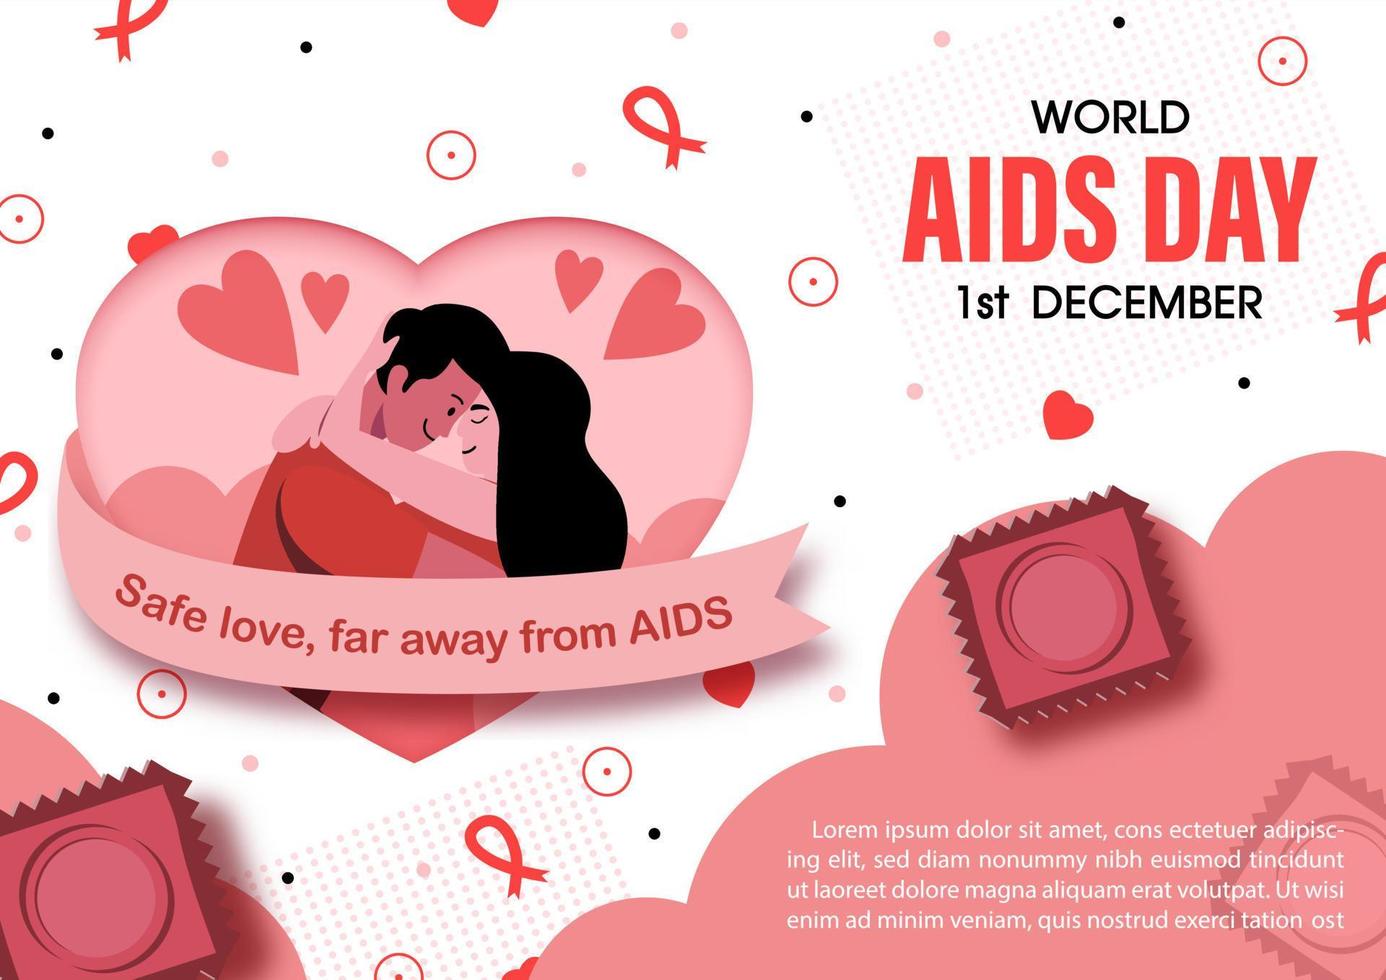 eslogan del día mundial del sida en la pancarta rosa con una pareja en el marco del corazón y el nombre del evento, textos de ejemplo sobre fondo blanco. campaña de afiches del día mundial del sida en diseño vectorial. vector